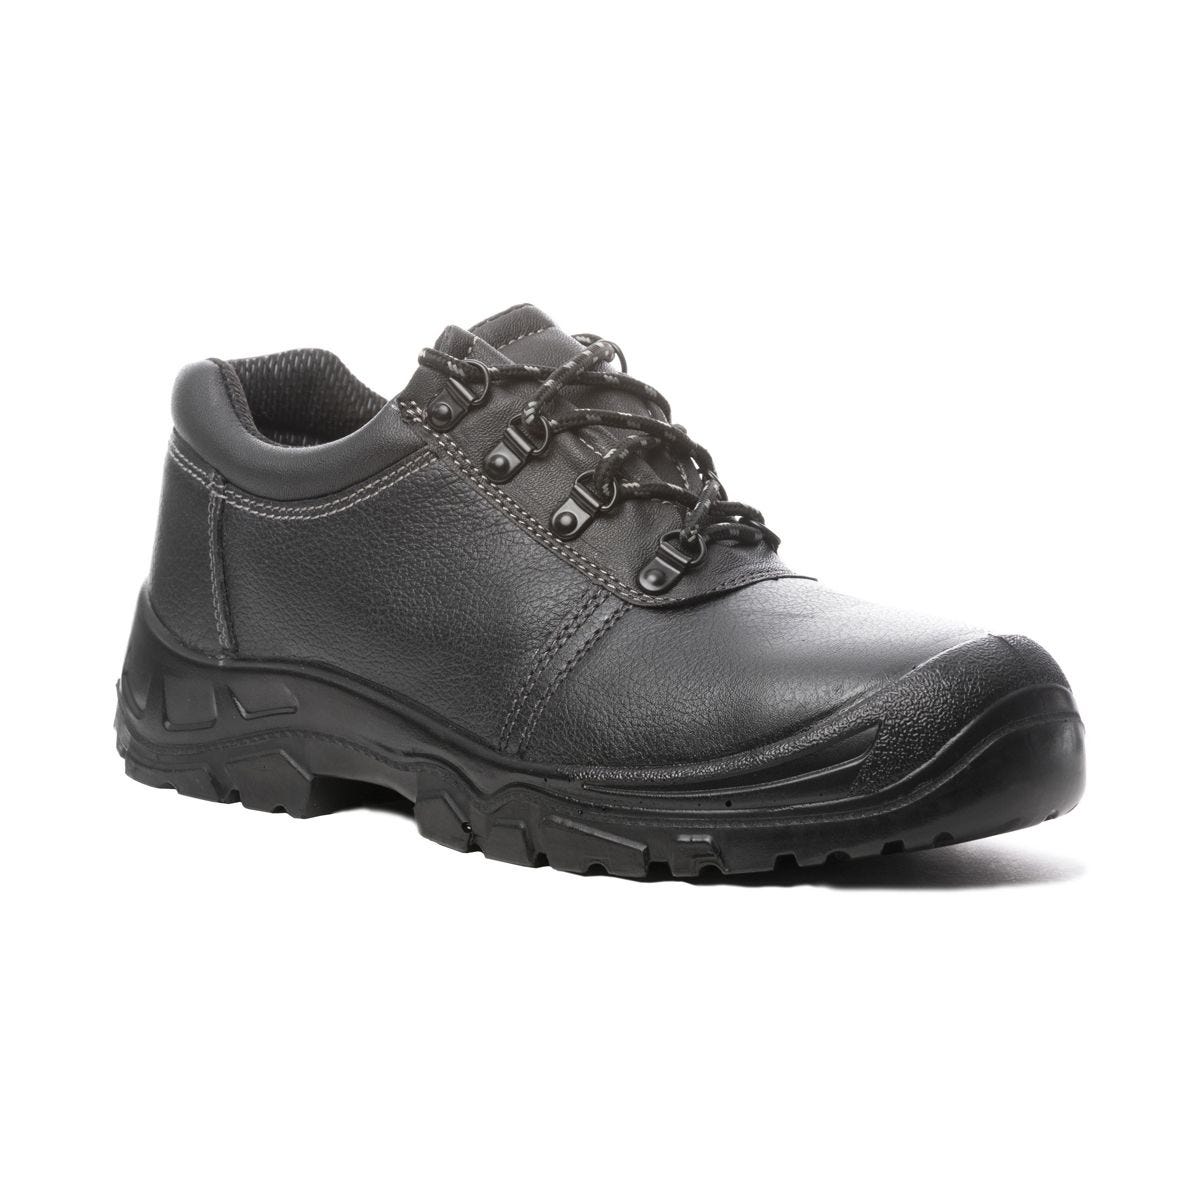 Chaussures de sécurité basses Azurite II S3 ESD noir - Coverguard - Taille 38 2